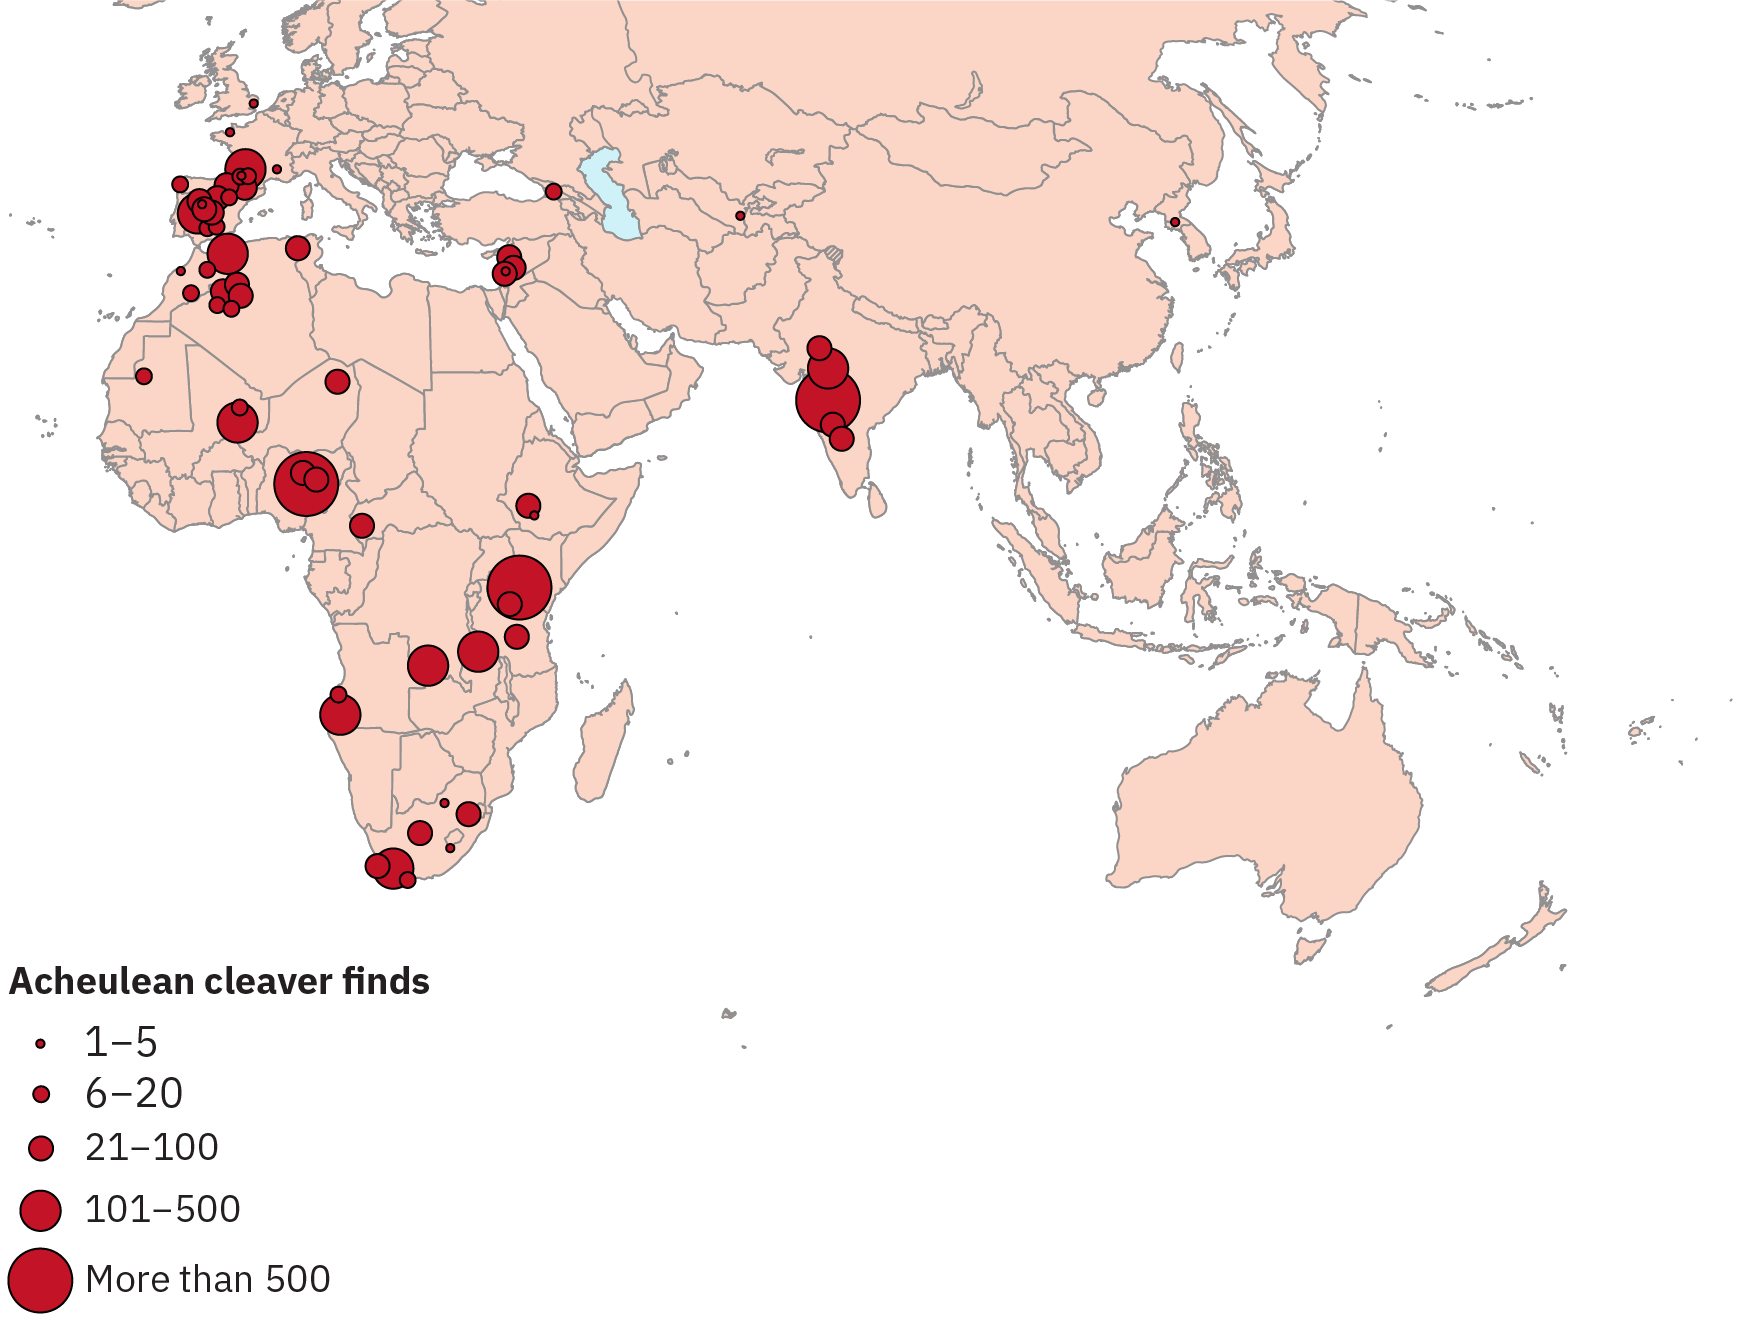 Marques indiquant le nombre de couperets acheuléens trouvés sur une carte de l'Europe, de l'Asie et de l'Afrique. Il existe des grappes de découvertes en Espagne, en Inde et dans certaines régions d'Afrique.